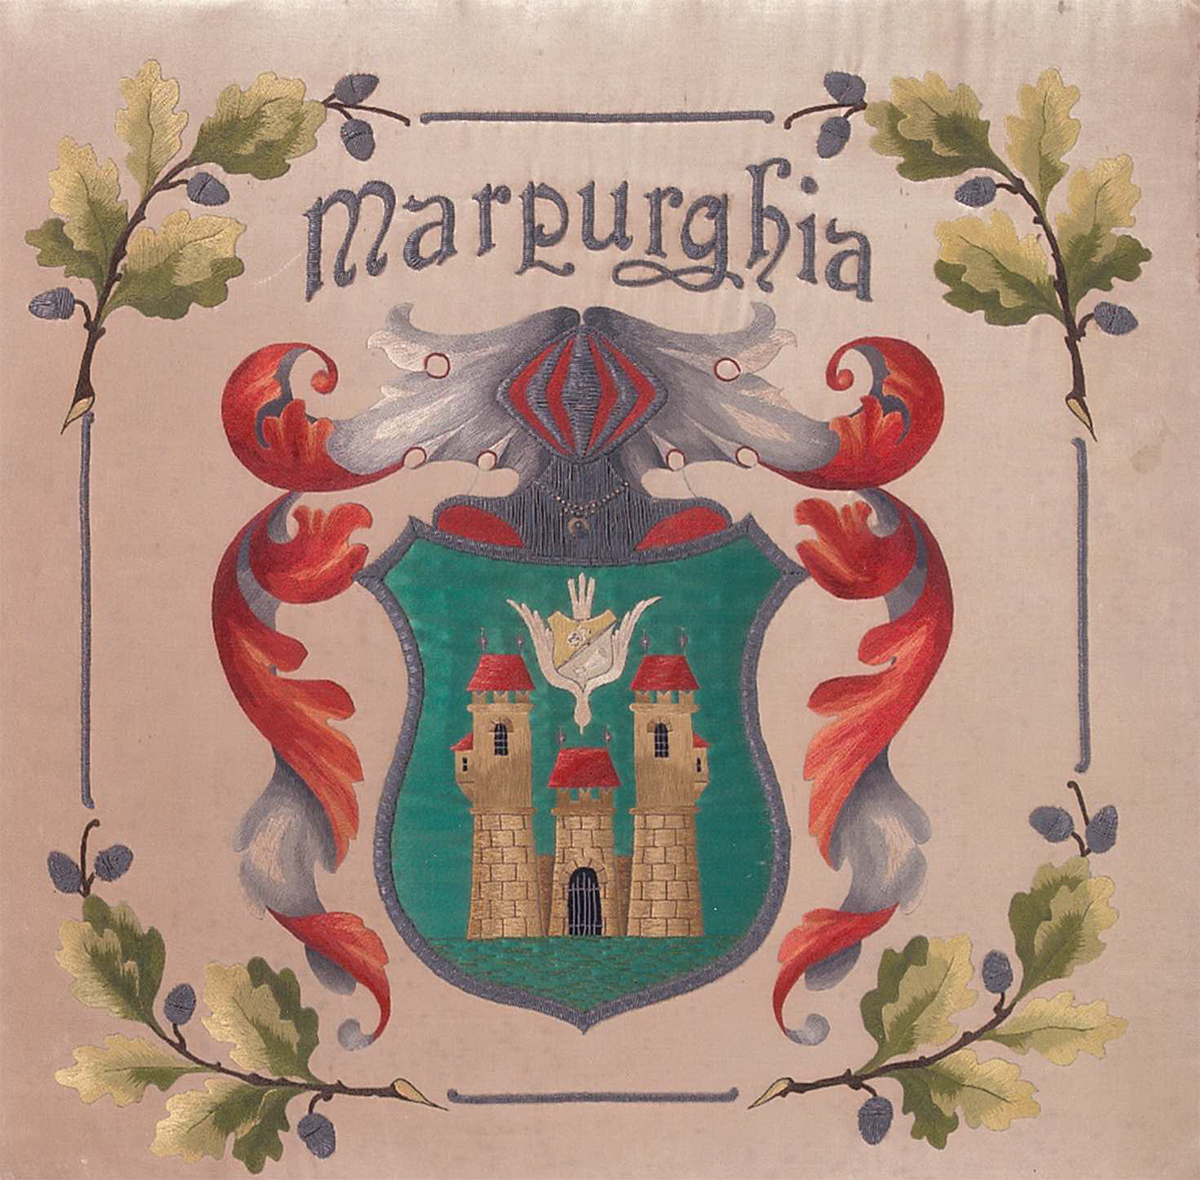 Marpurghia